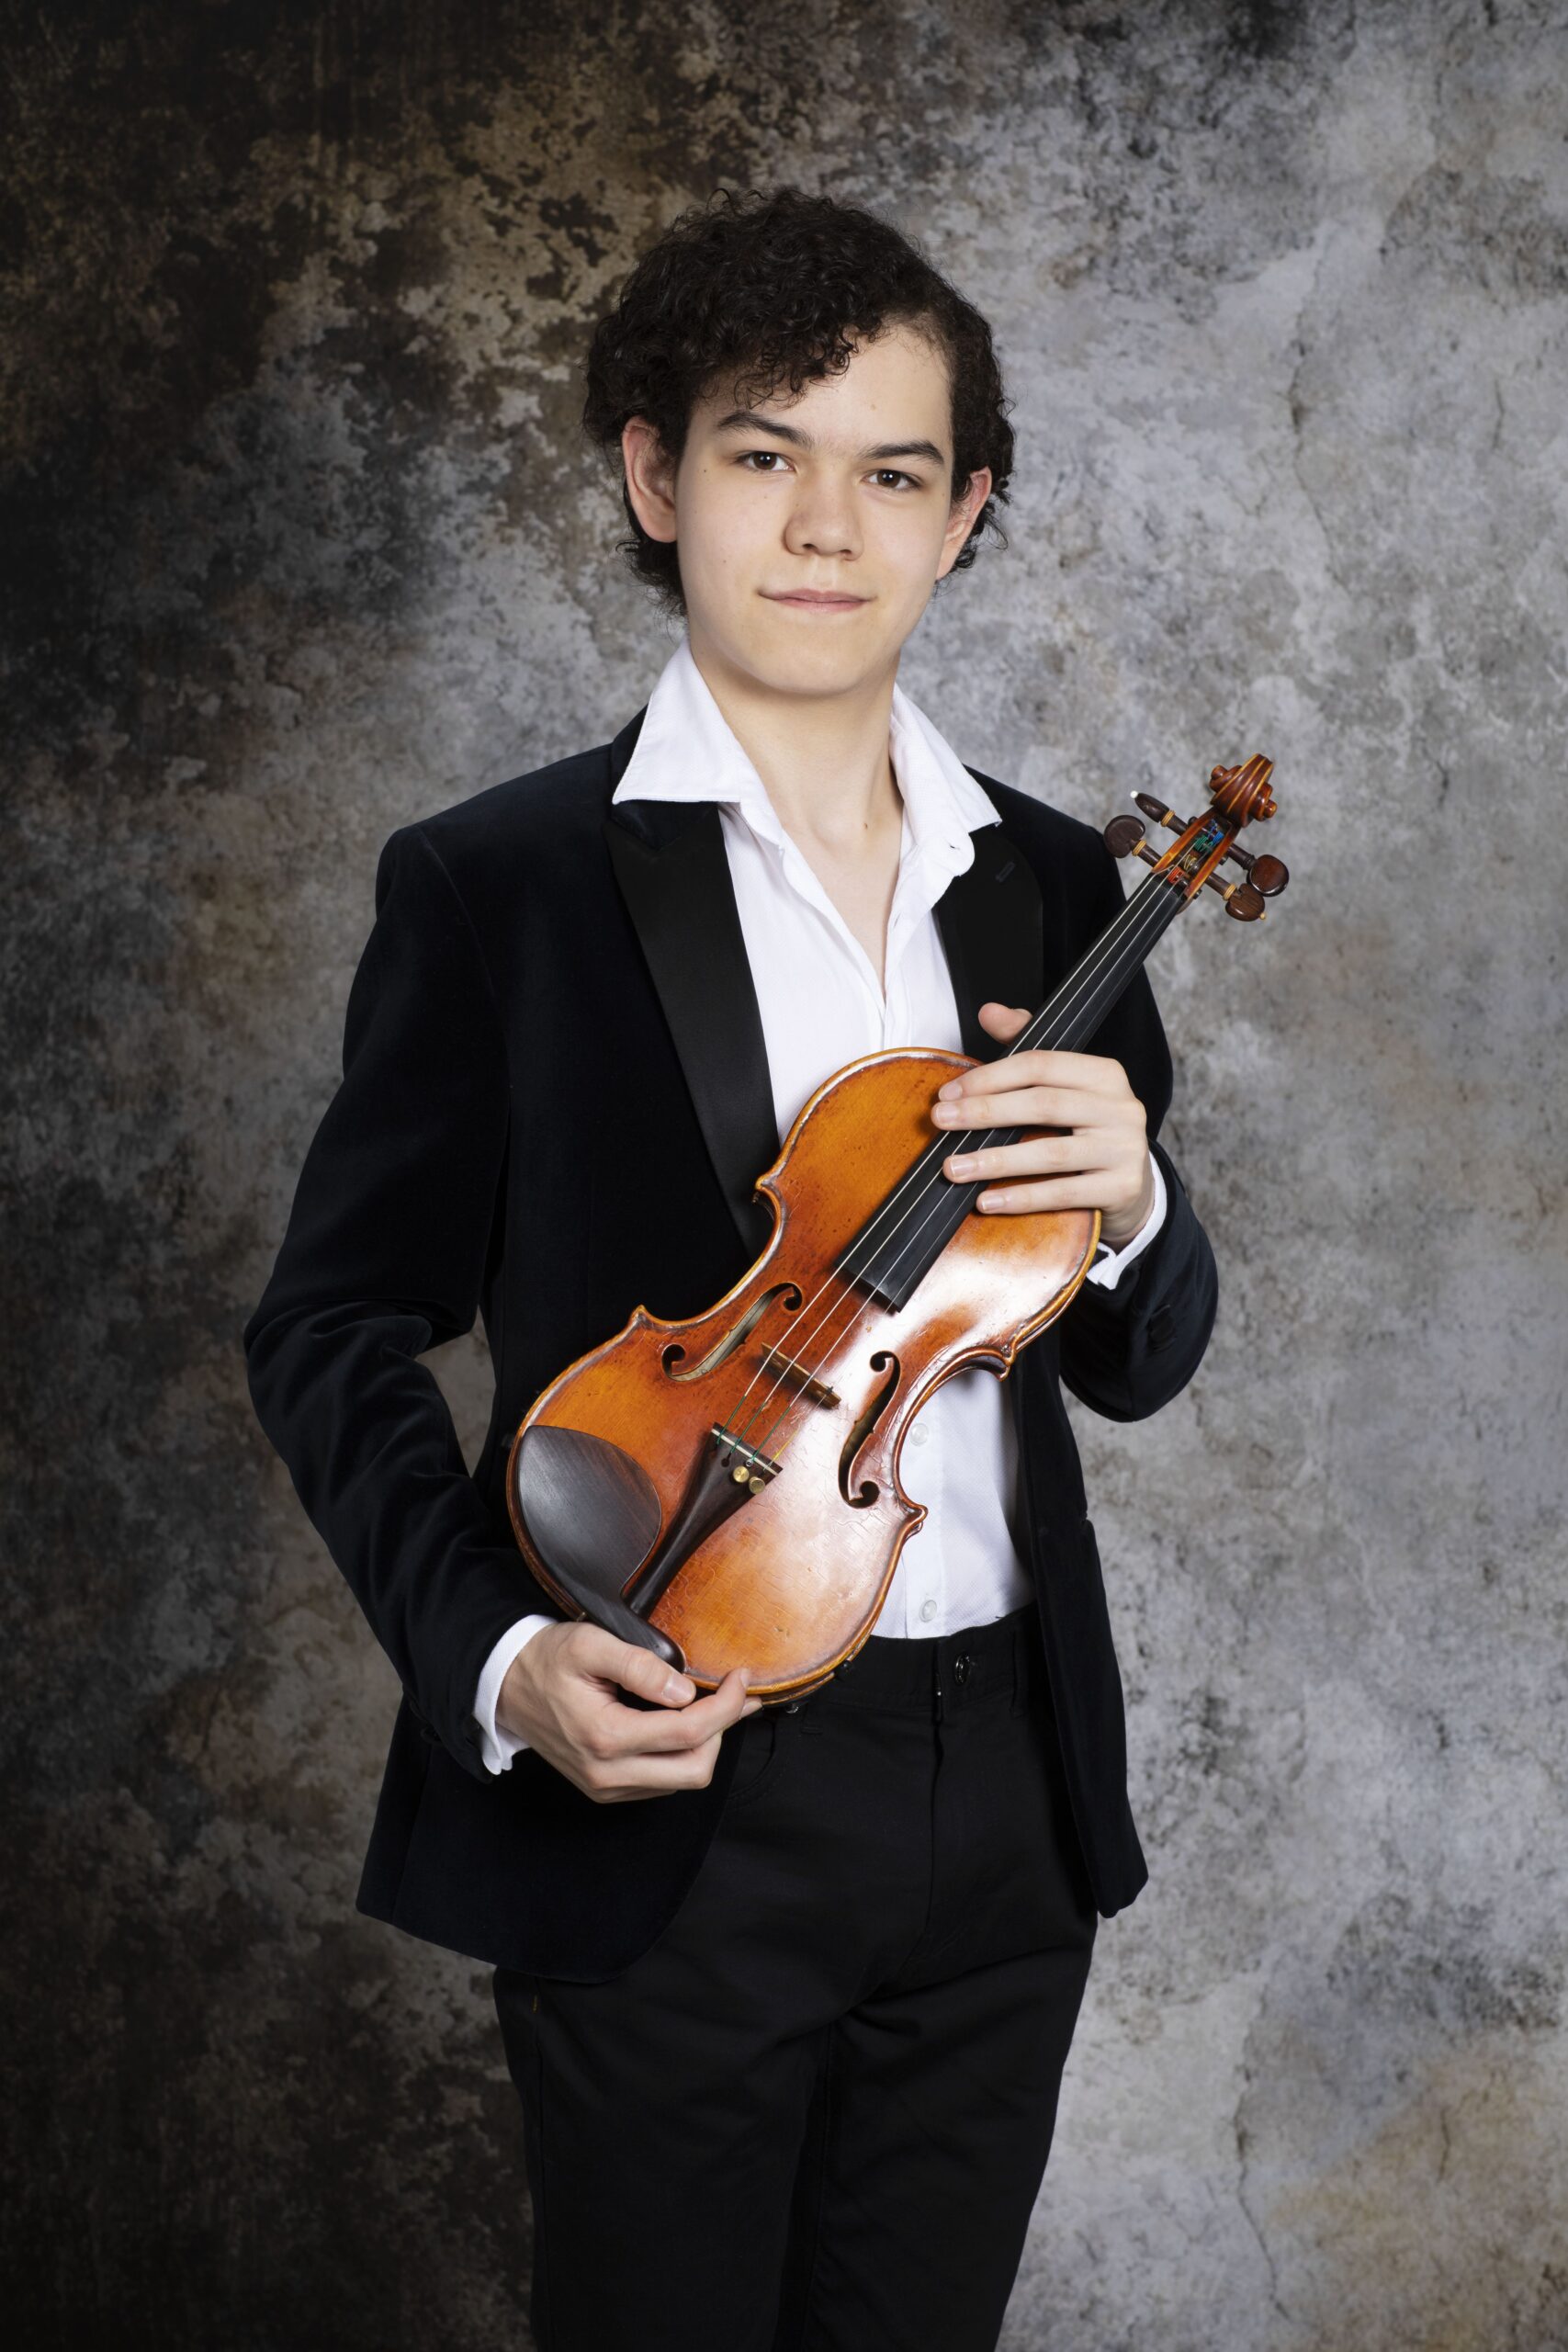 Eduard Kollert - violin